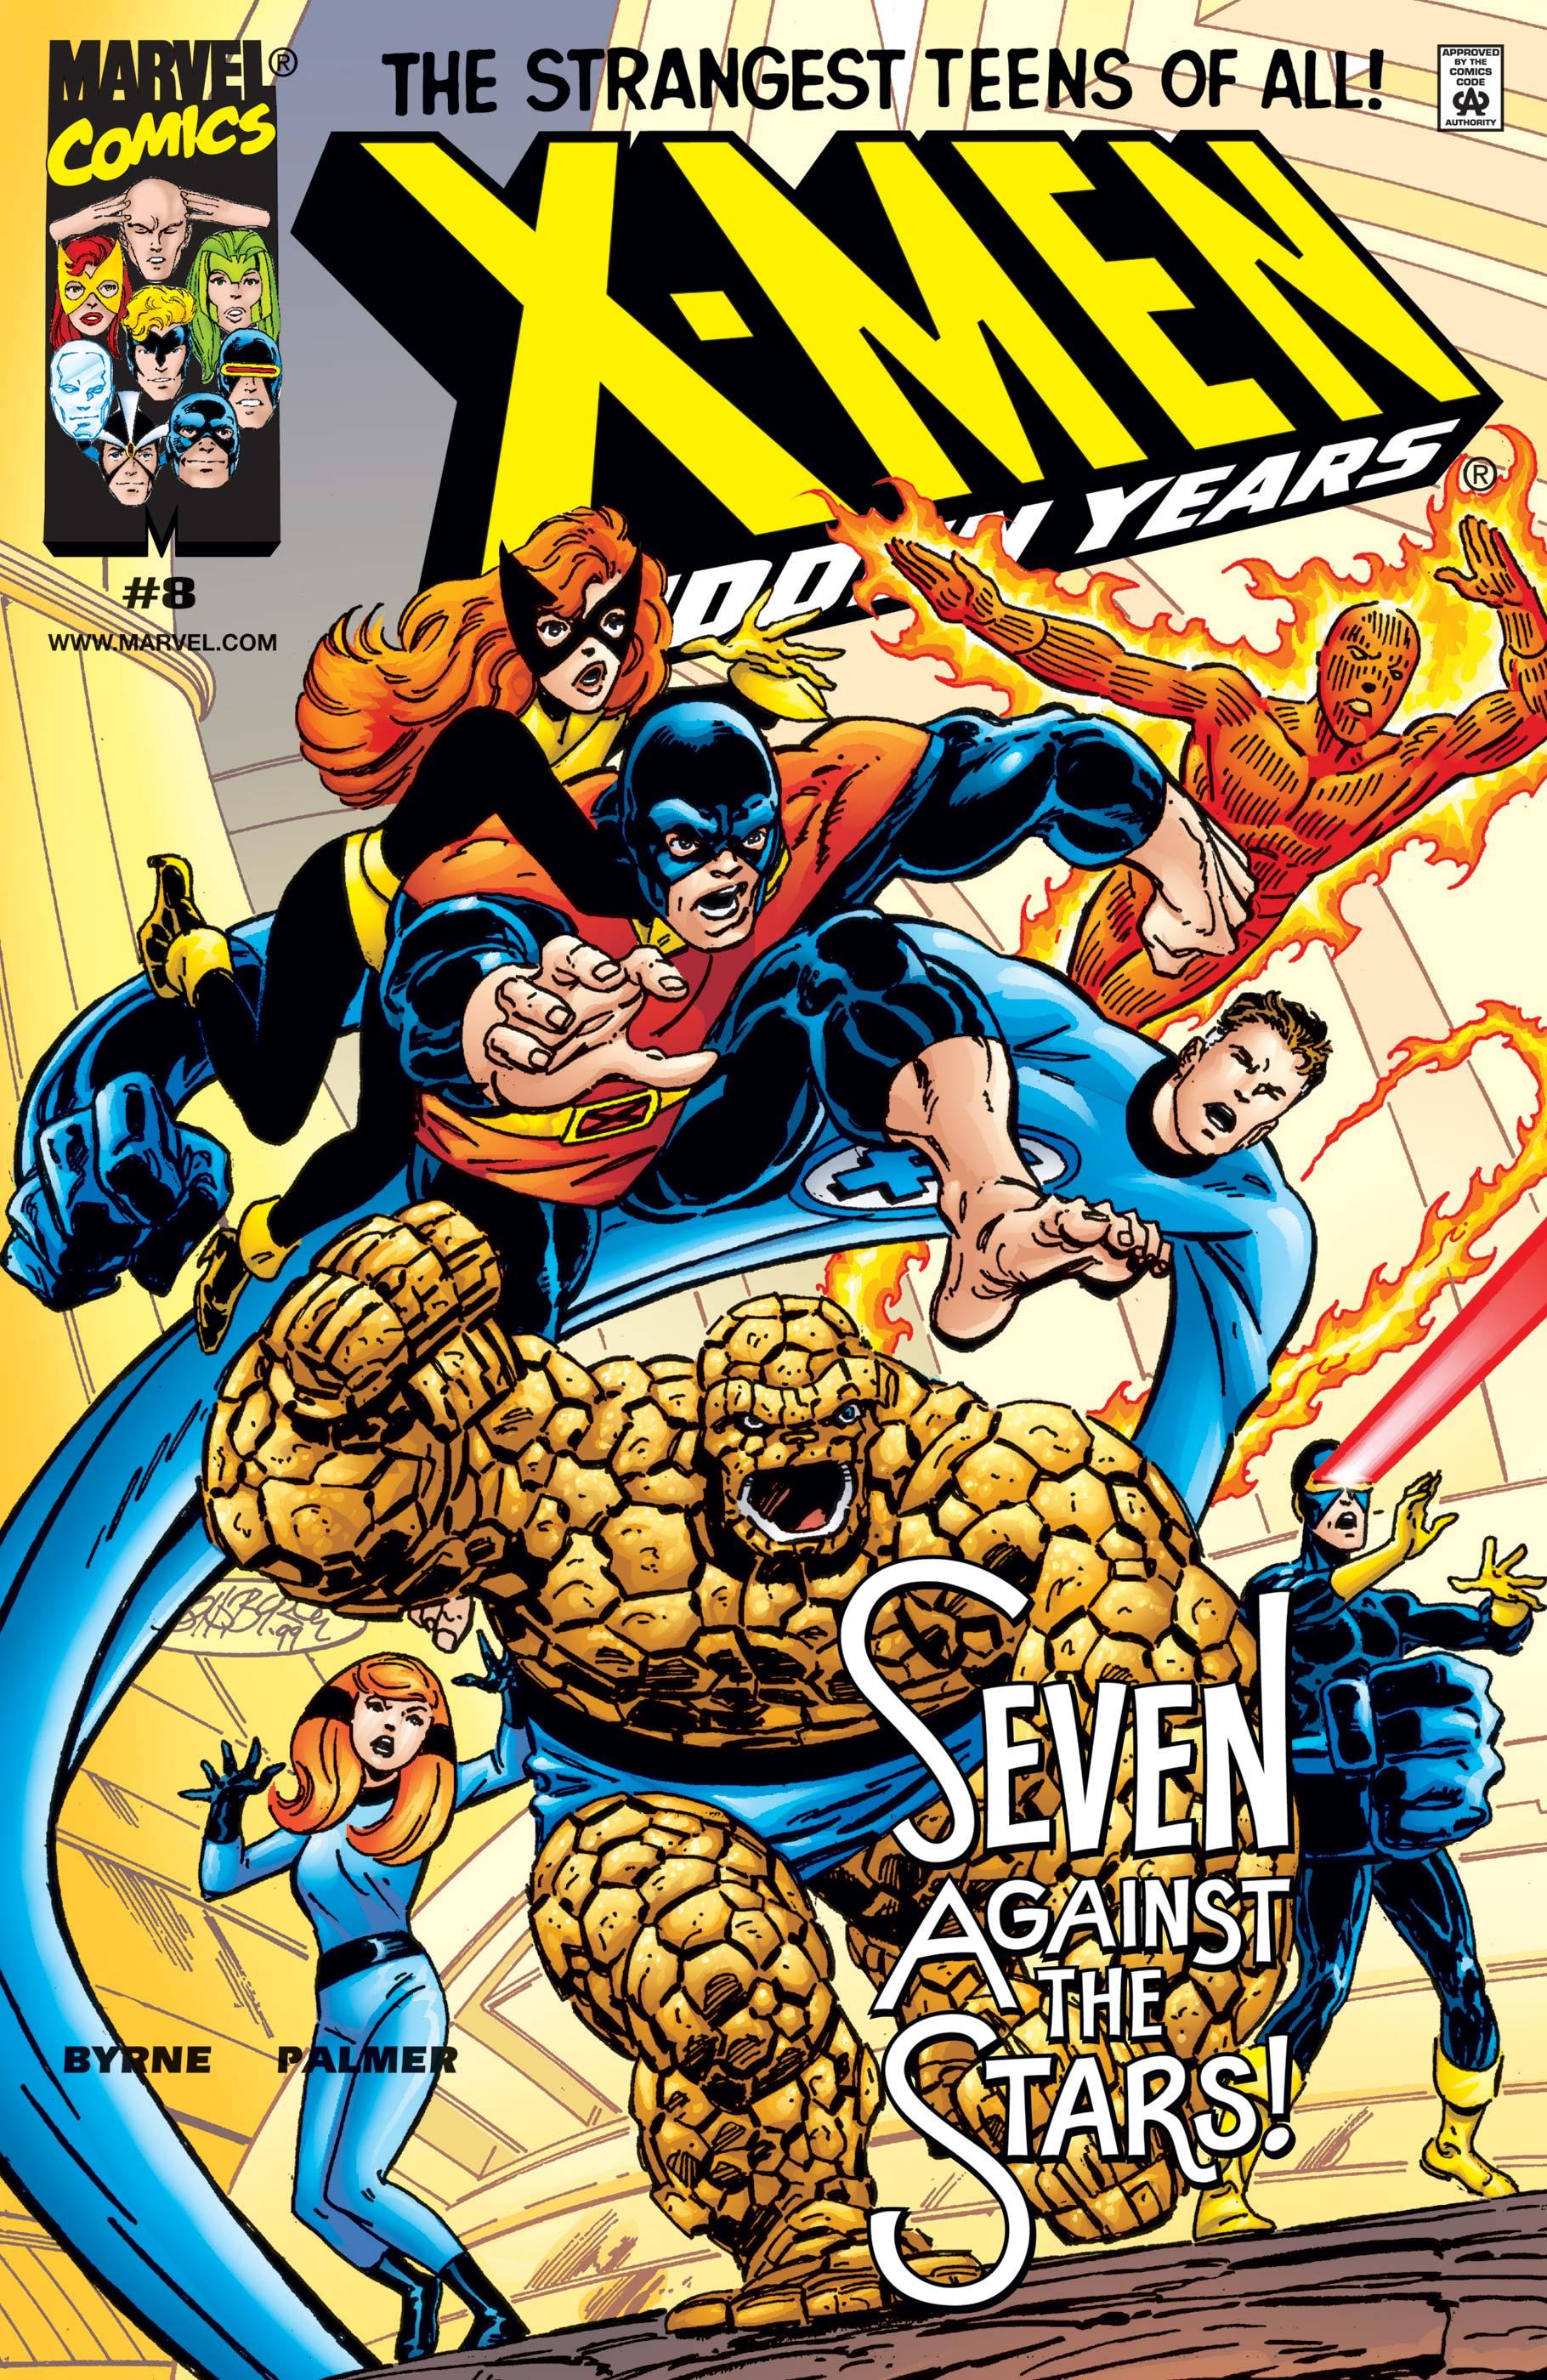 X-MEN. THE HIDDEN YEARS #5#6#7#8 - MARVEL COMICS (2000)